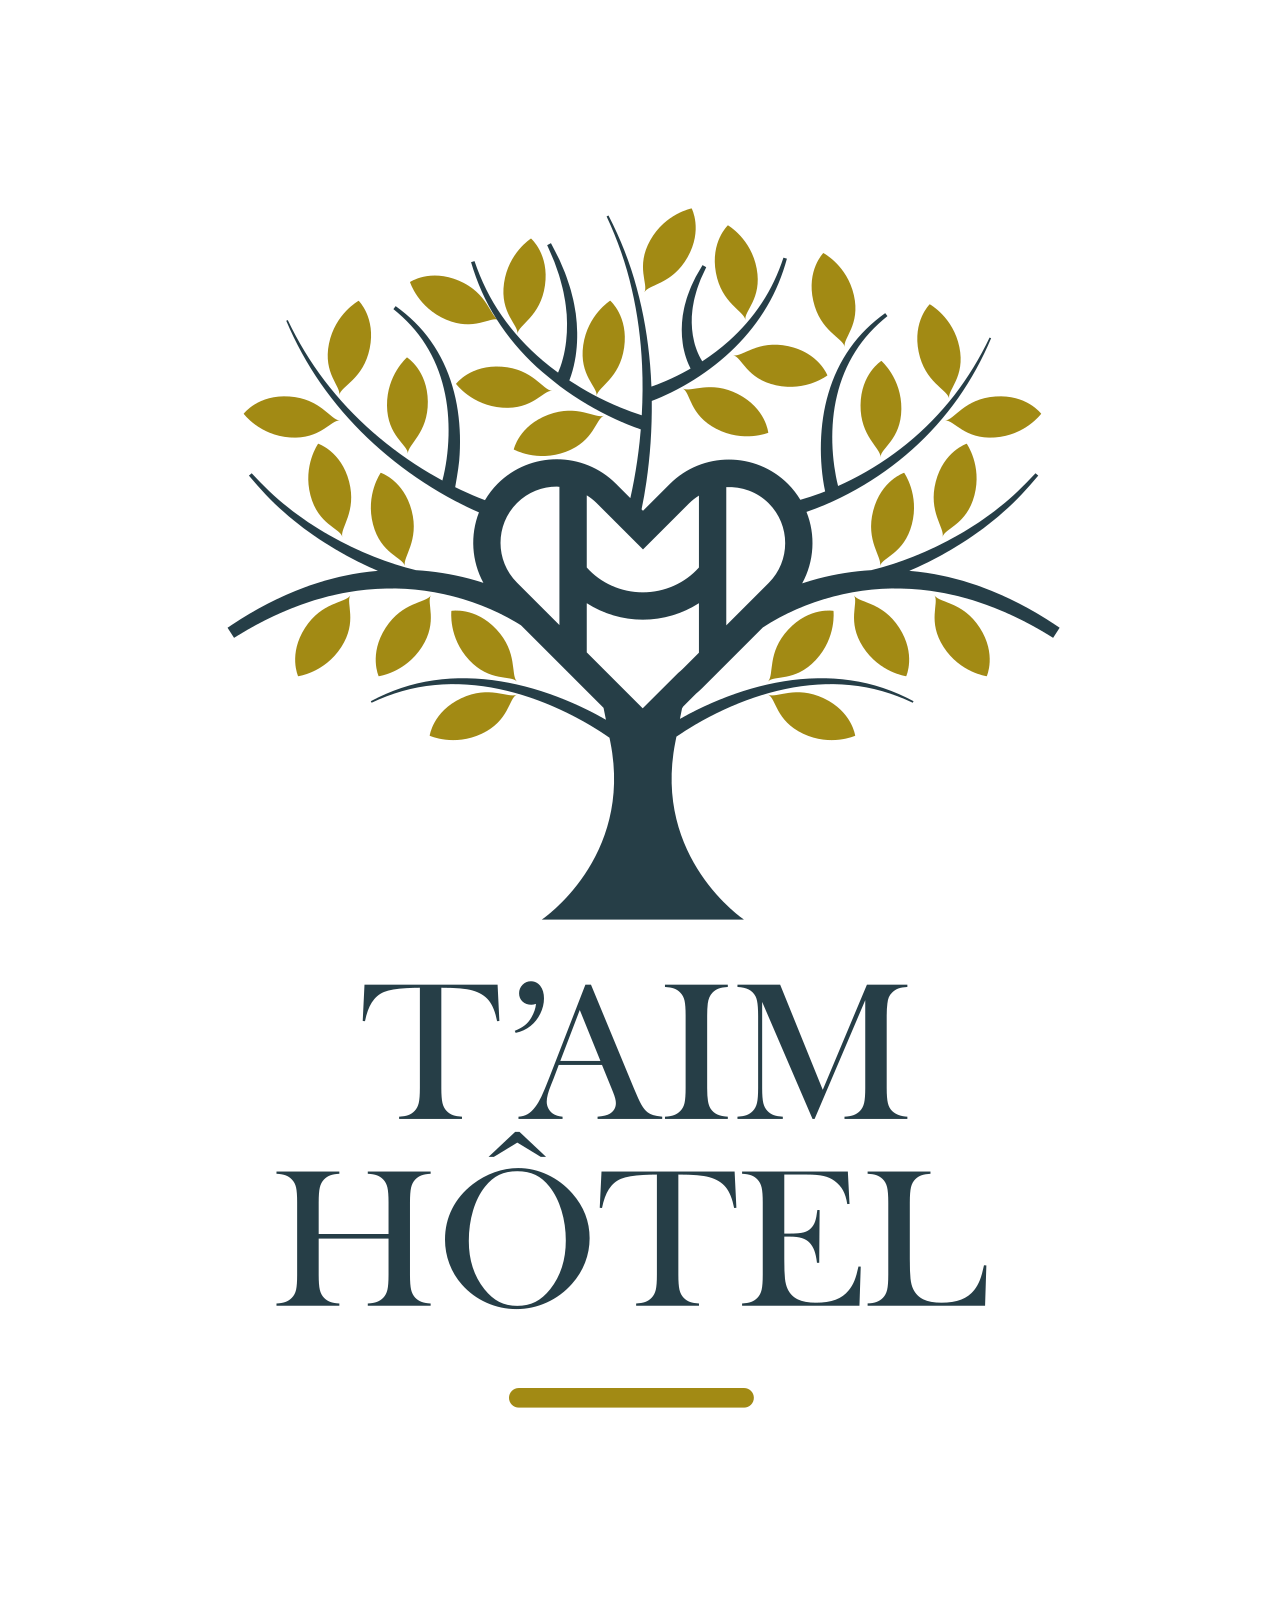 Taim hotel